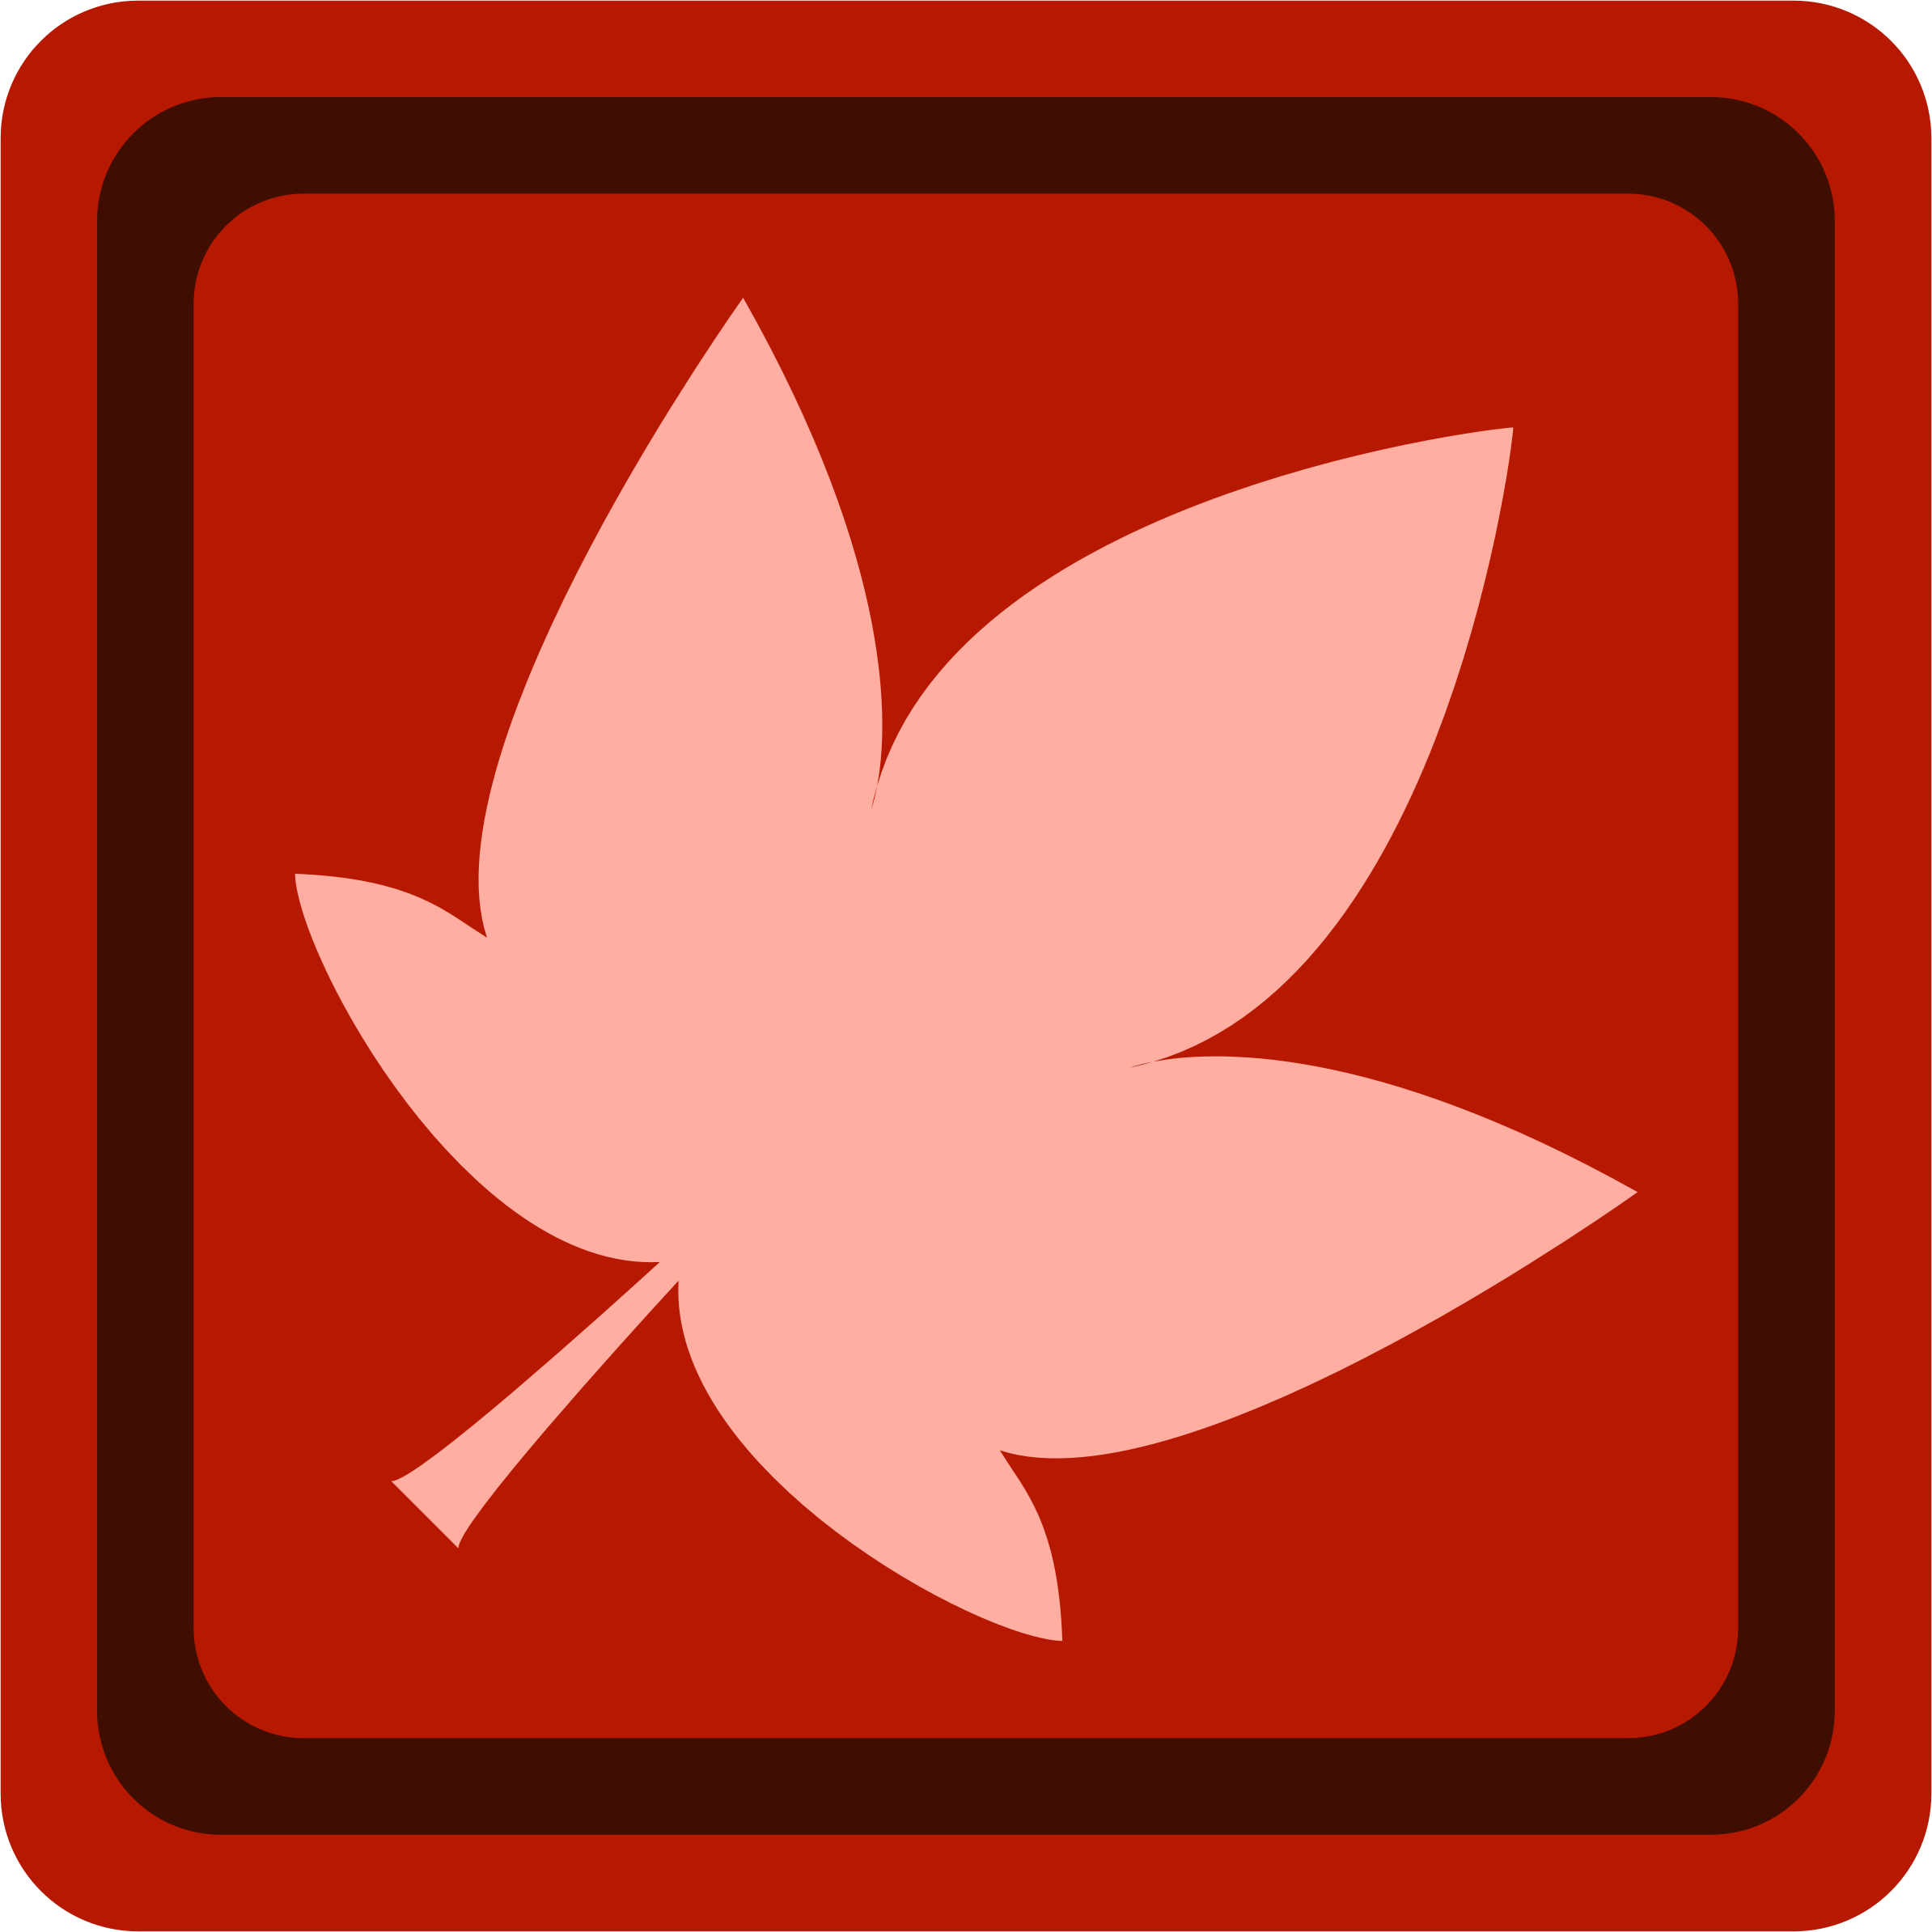 autumn clipart symbol